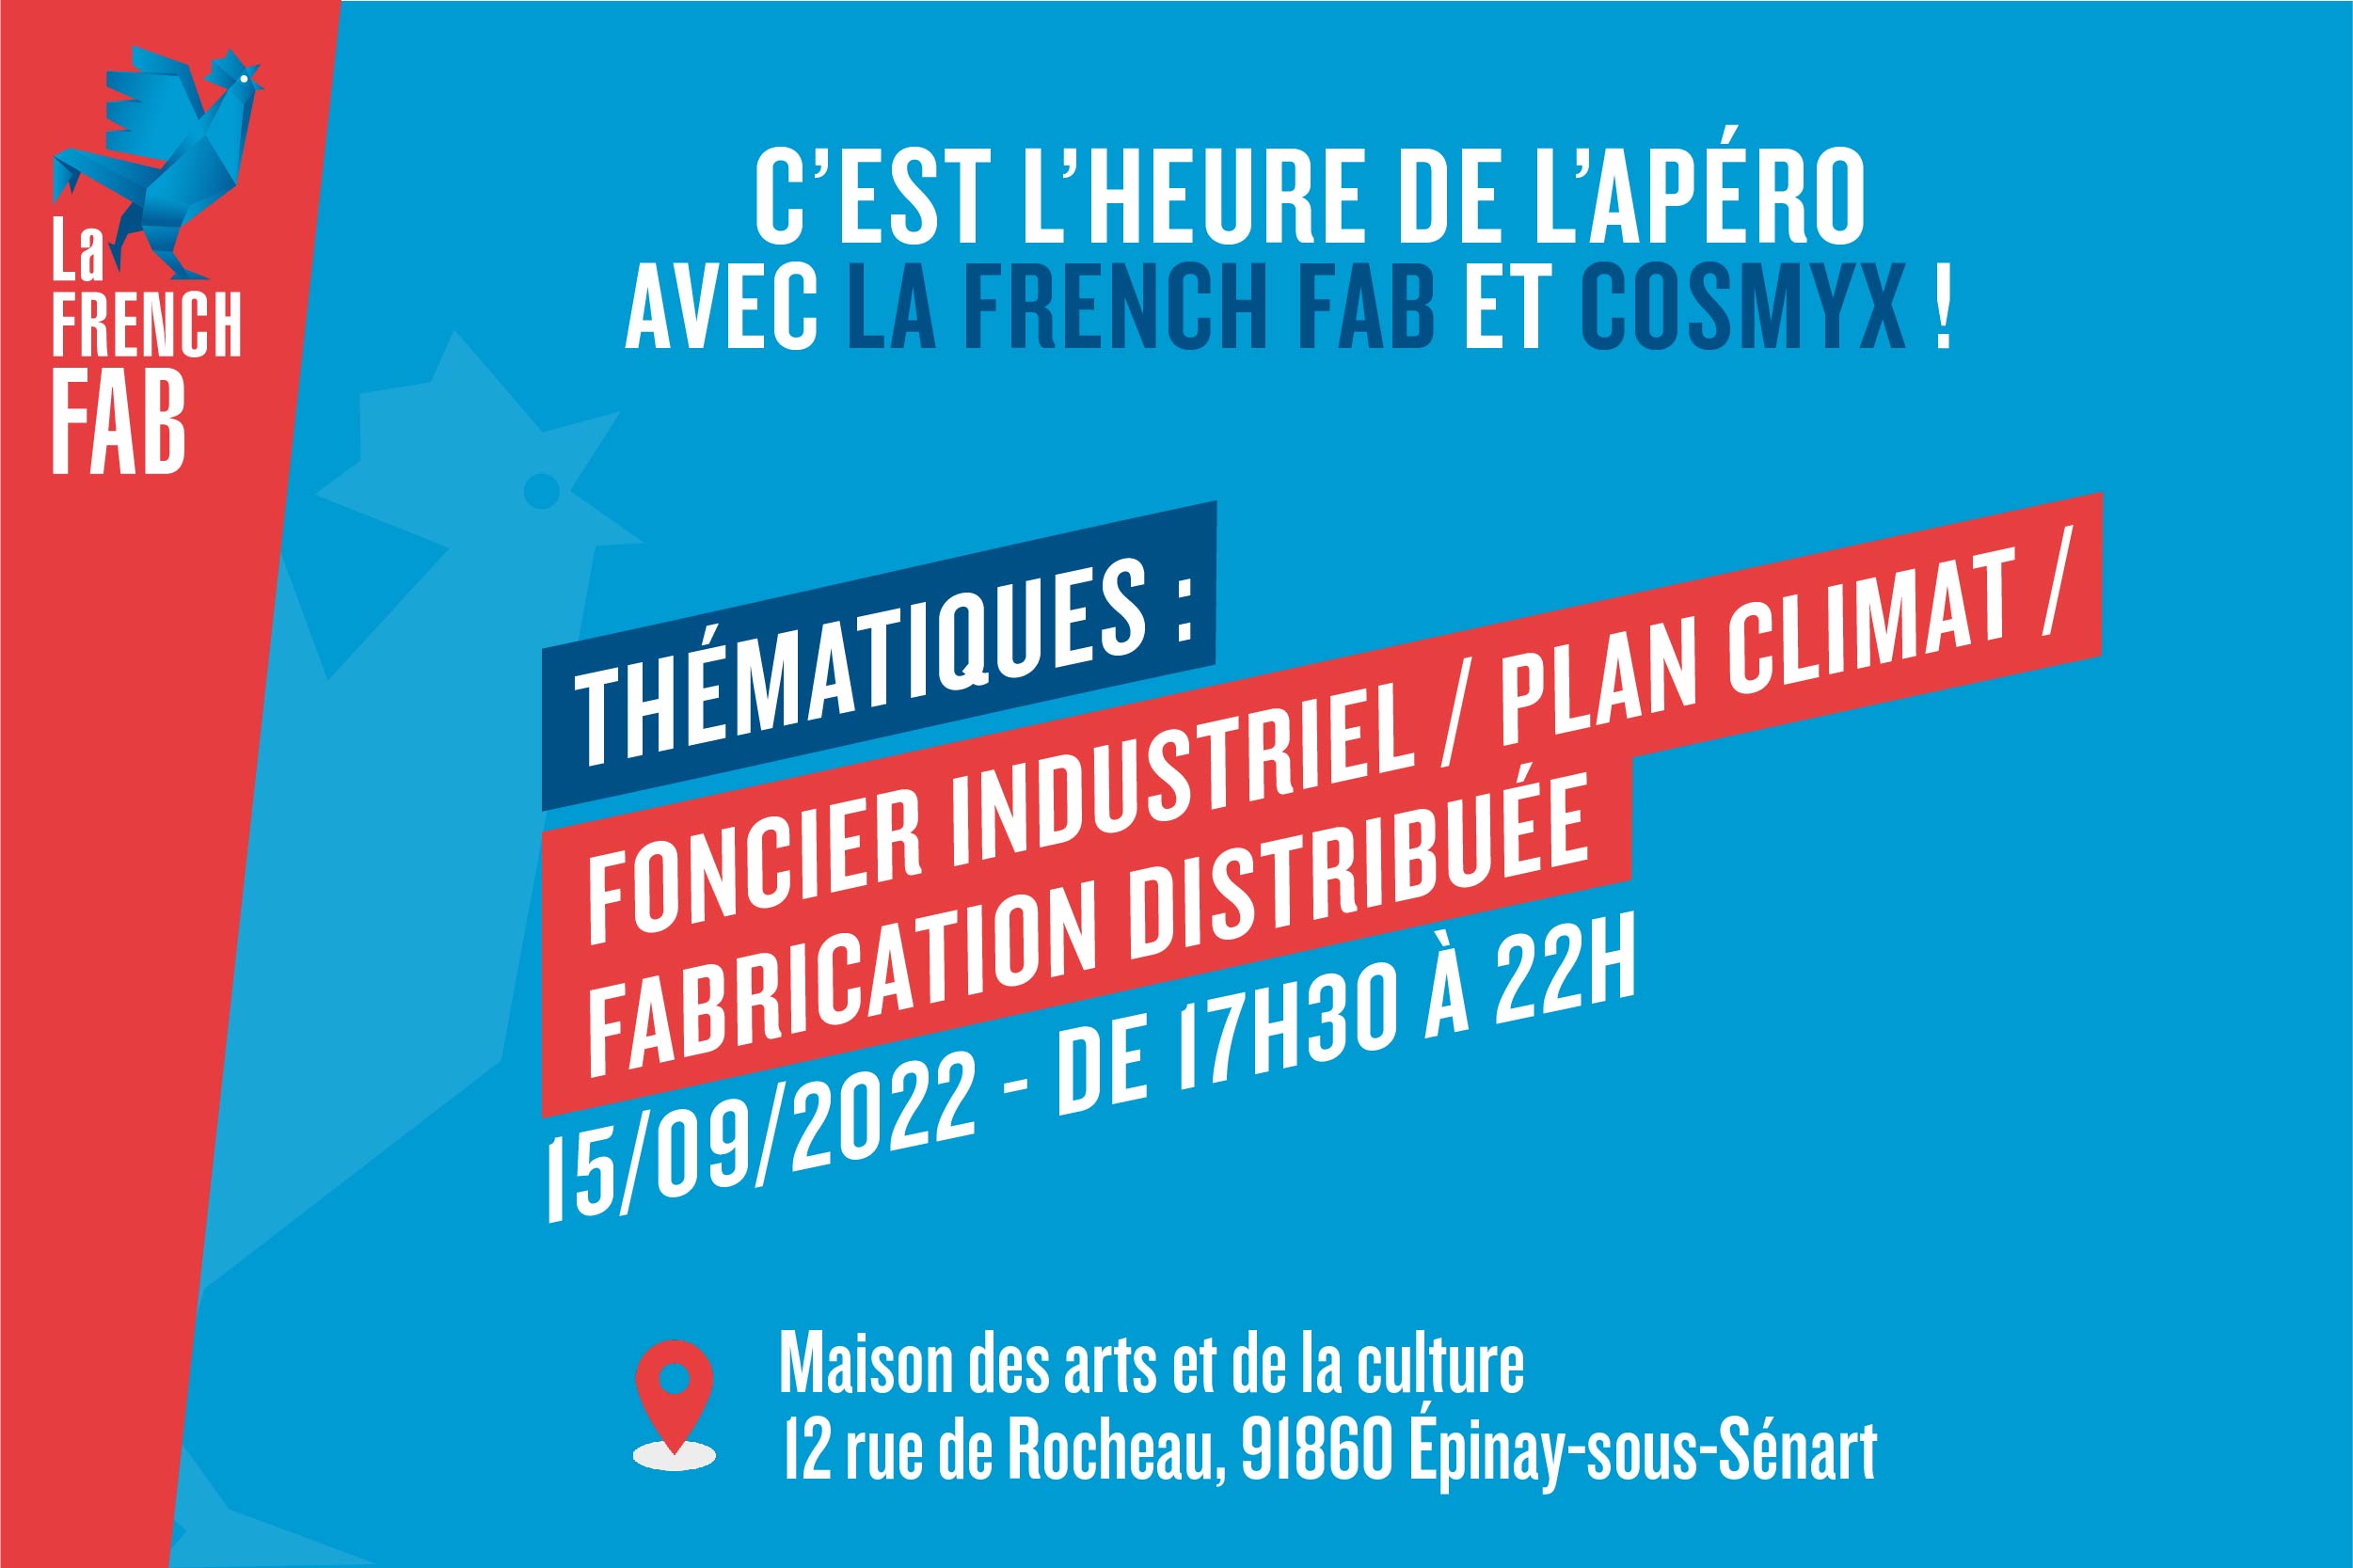 L'apéro La French Fab organisé avec Cosmyx|Le tout premier apéro La French Fab aura lieu le 15 septembre 2022